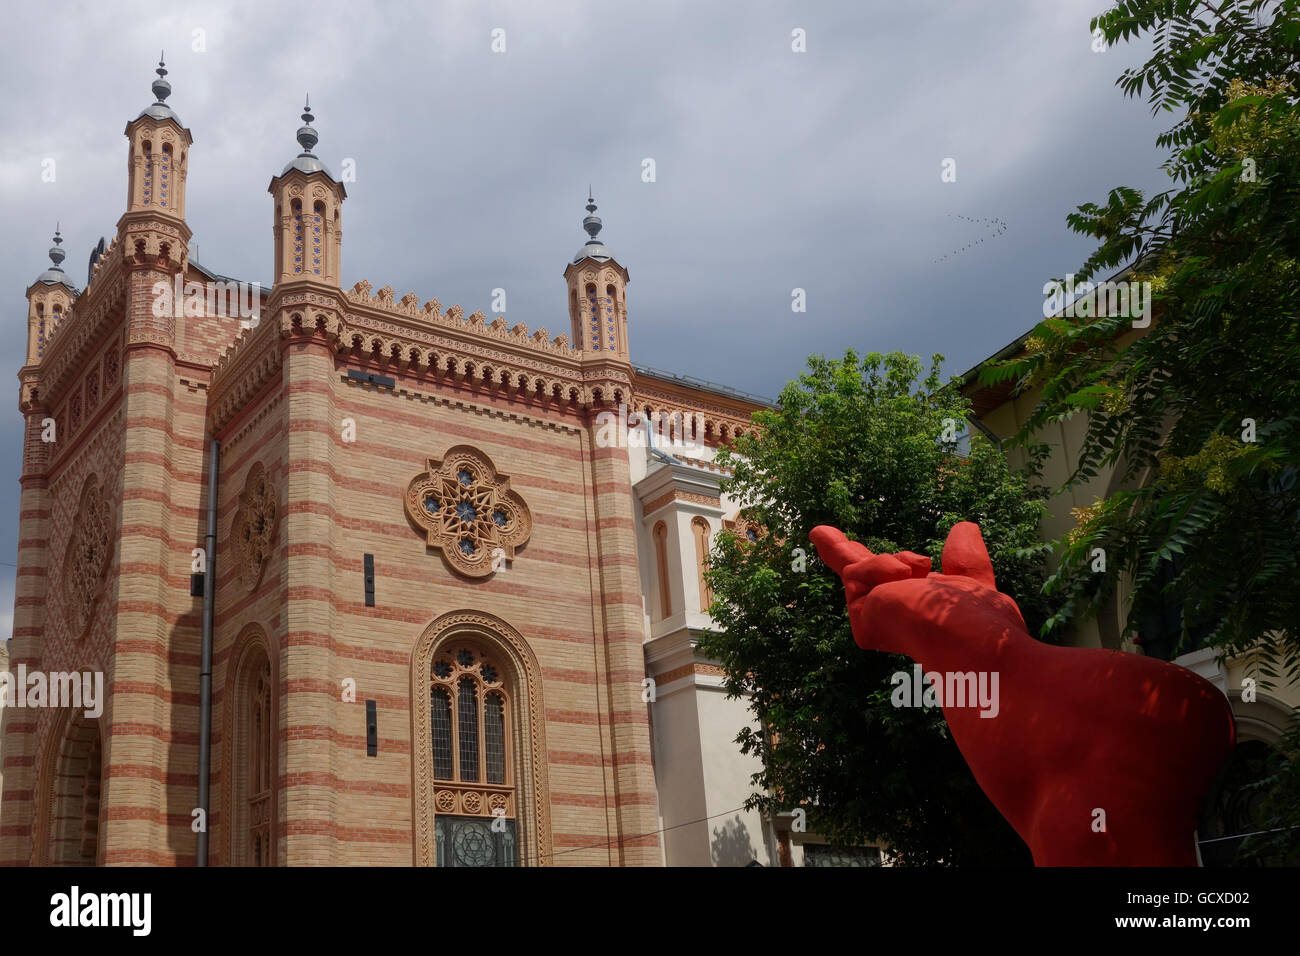 Fassade des restaurierten Choraltempel eine Synagoge gebaut im Jahre 1867 durch die ultrarechten Legionäre verwüstet, aber nach dem zweiten Weltkrieg im Jahre 1945 restauriert. Bukarest, Rumänien Stockfoto